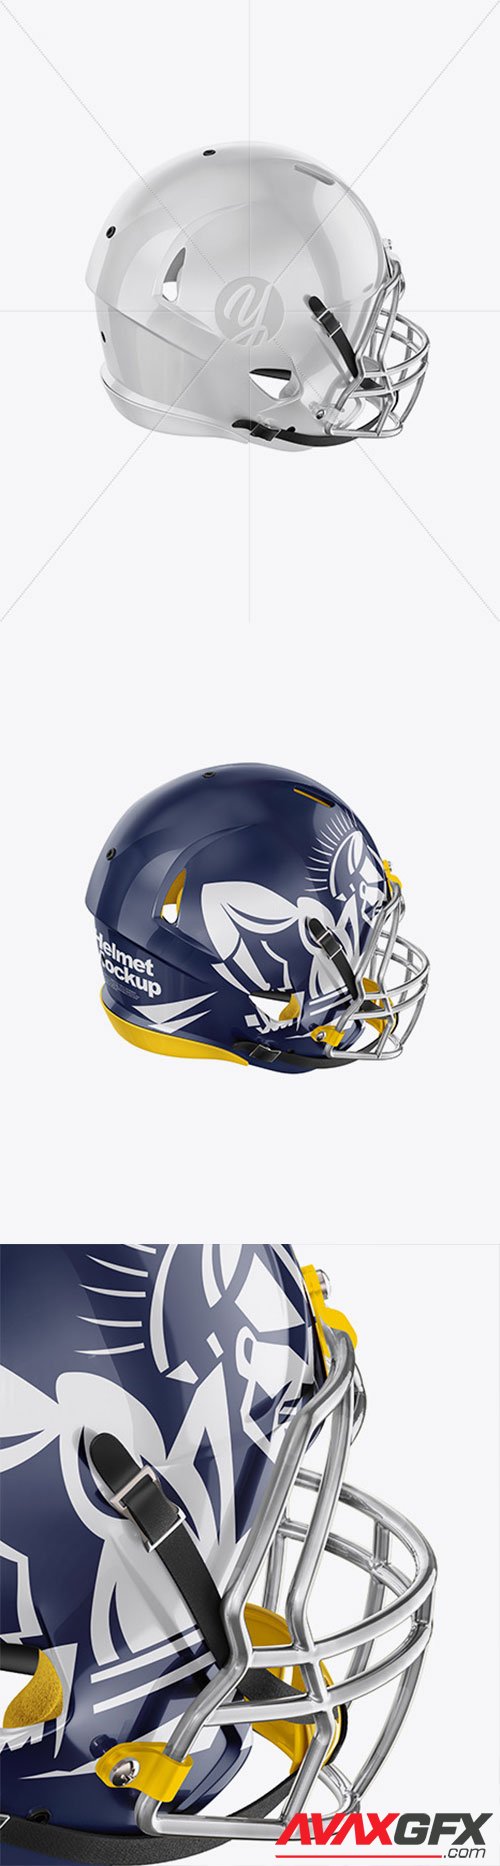 American Football Helmet Mockup 56857